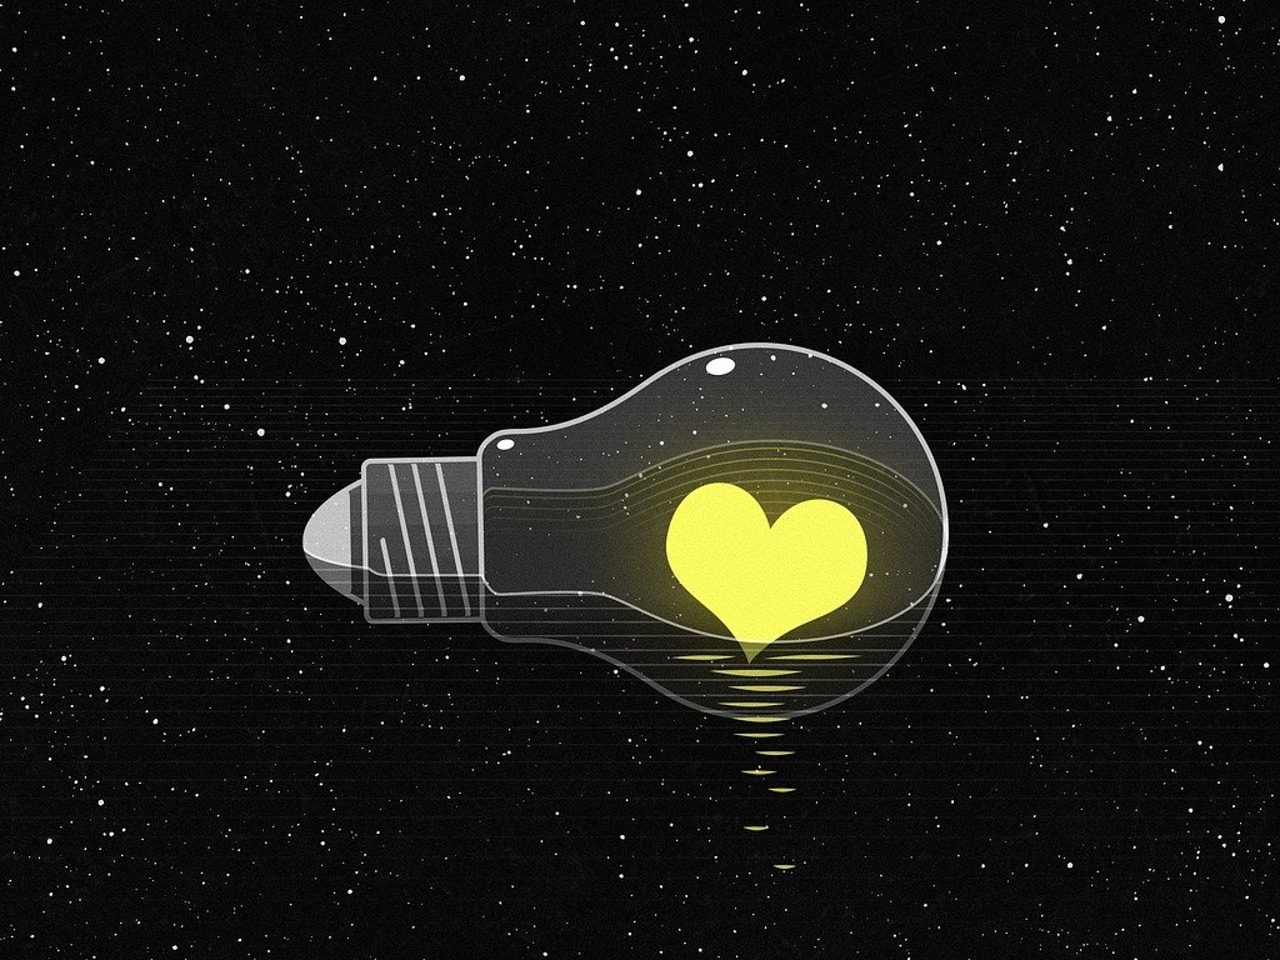 Ampoule avec un cœur jaune allumé à l'intérieur